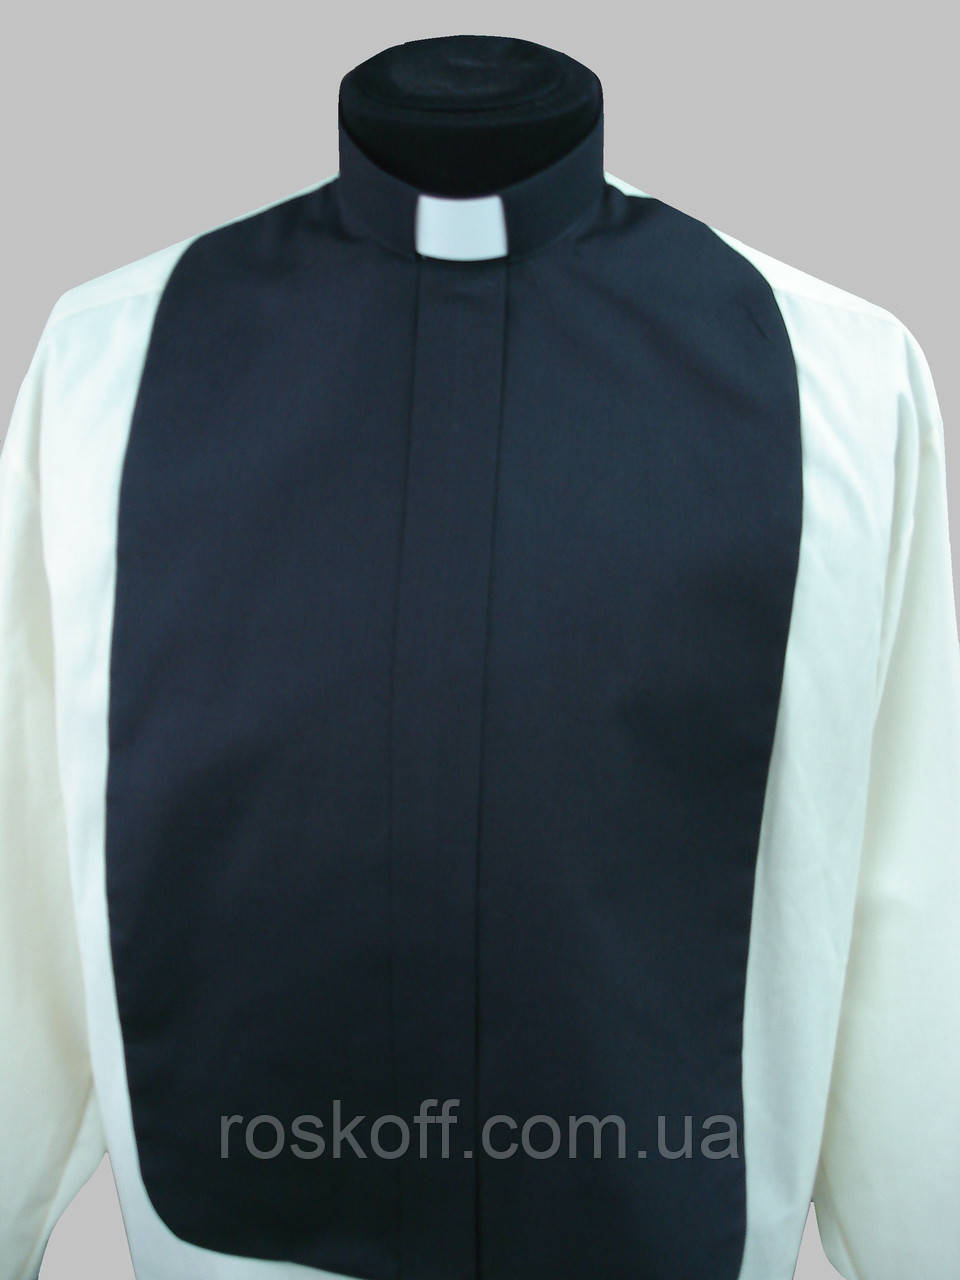 Манишка для священника чорного кольору